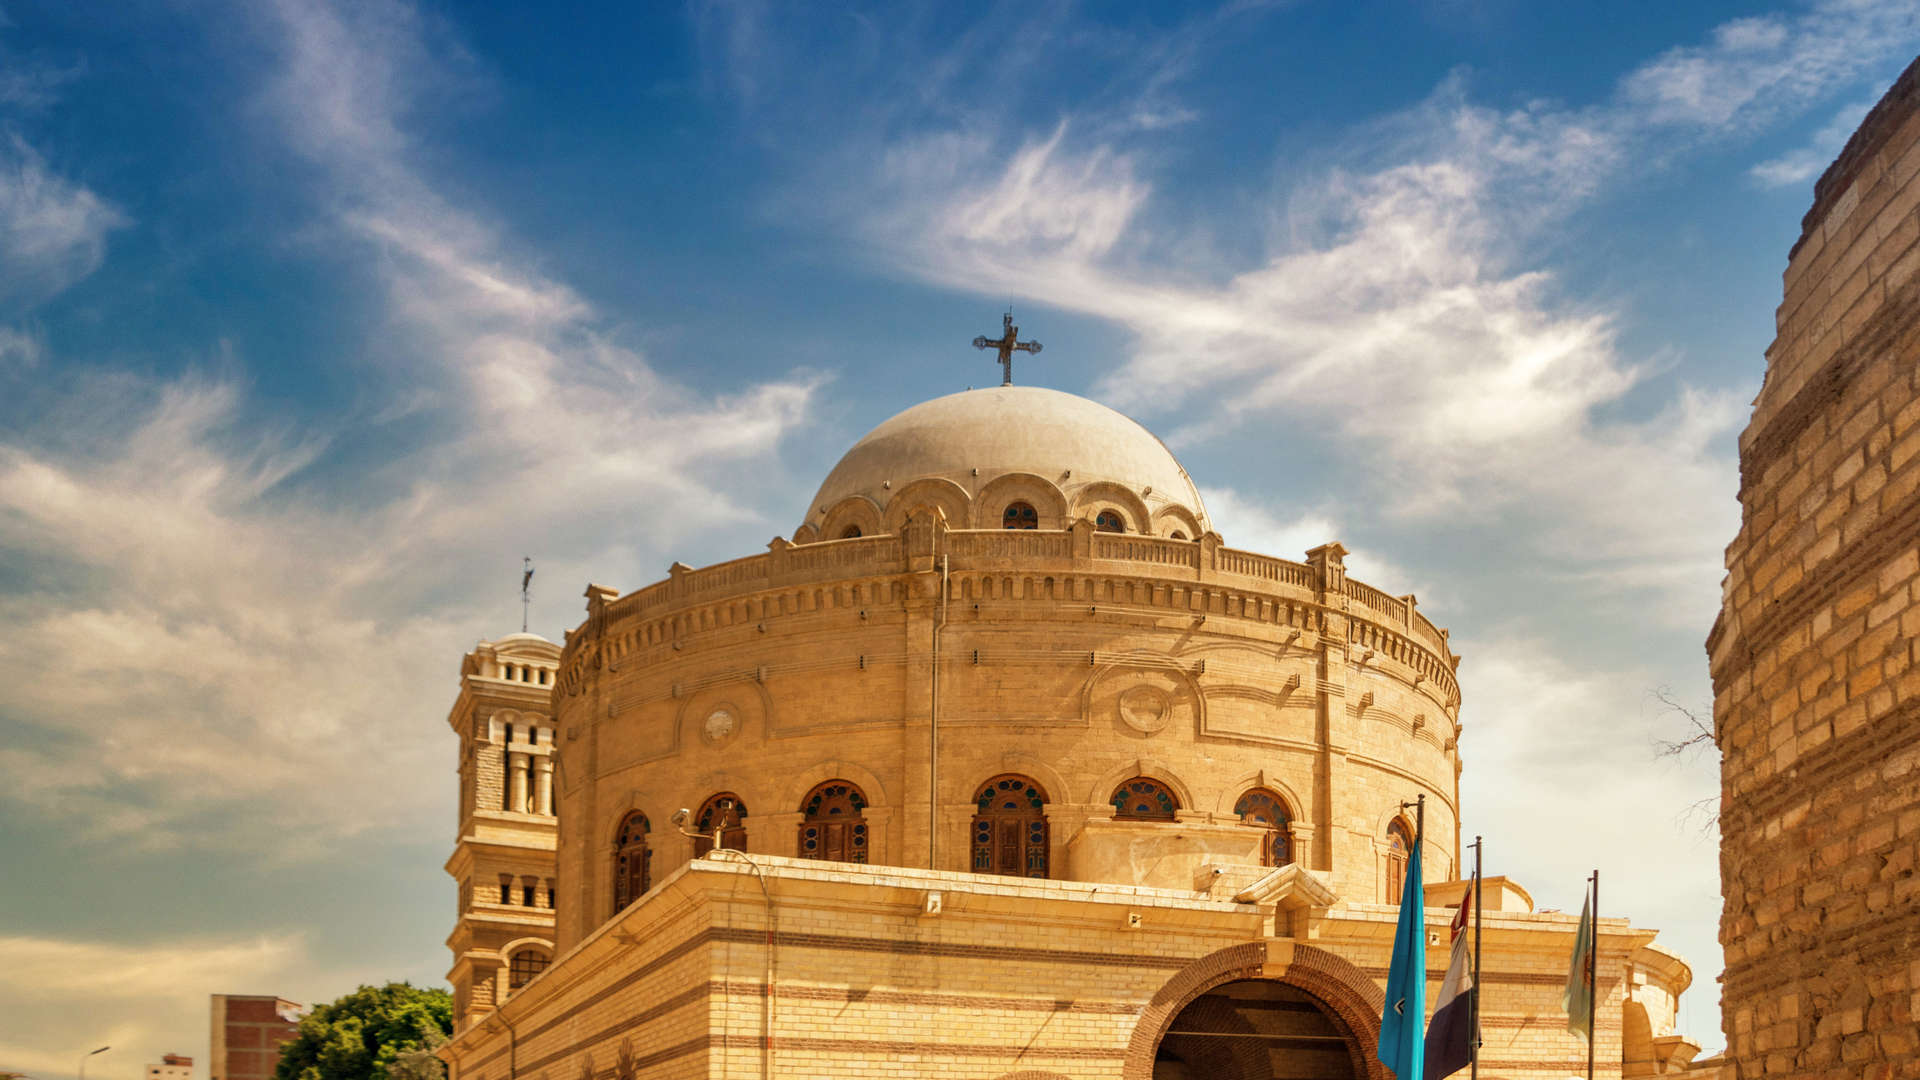 La chiesa di San Giorgio del X secolo a Cairo Vecchia